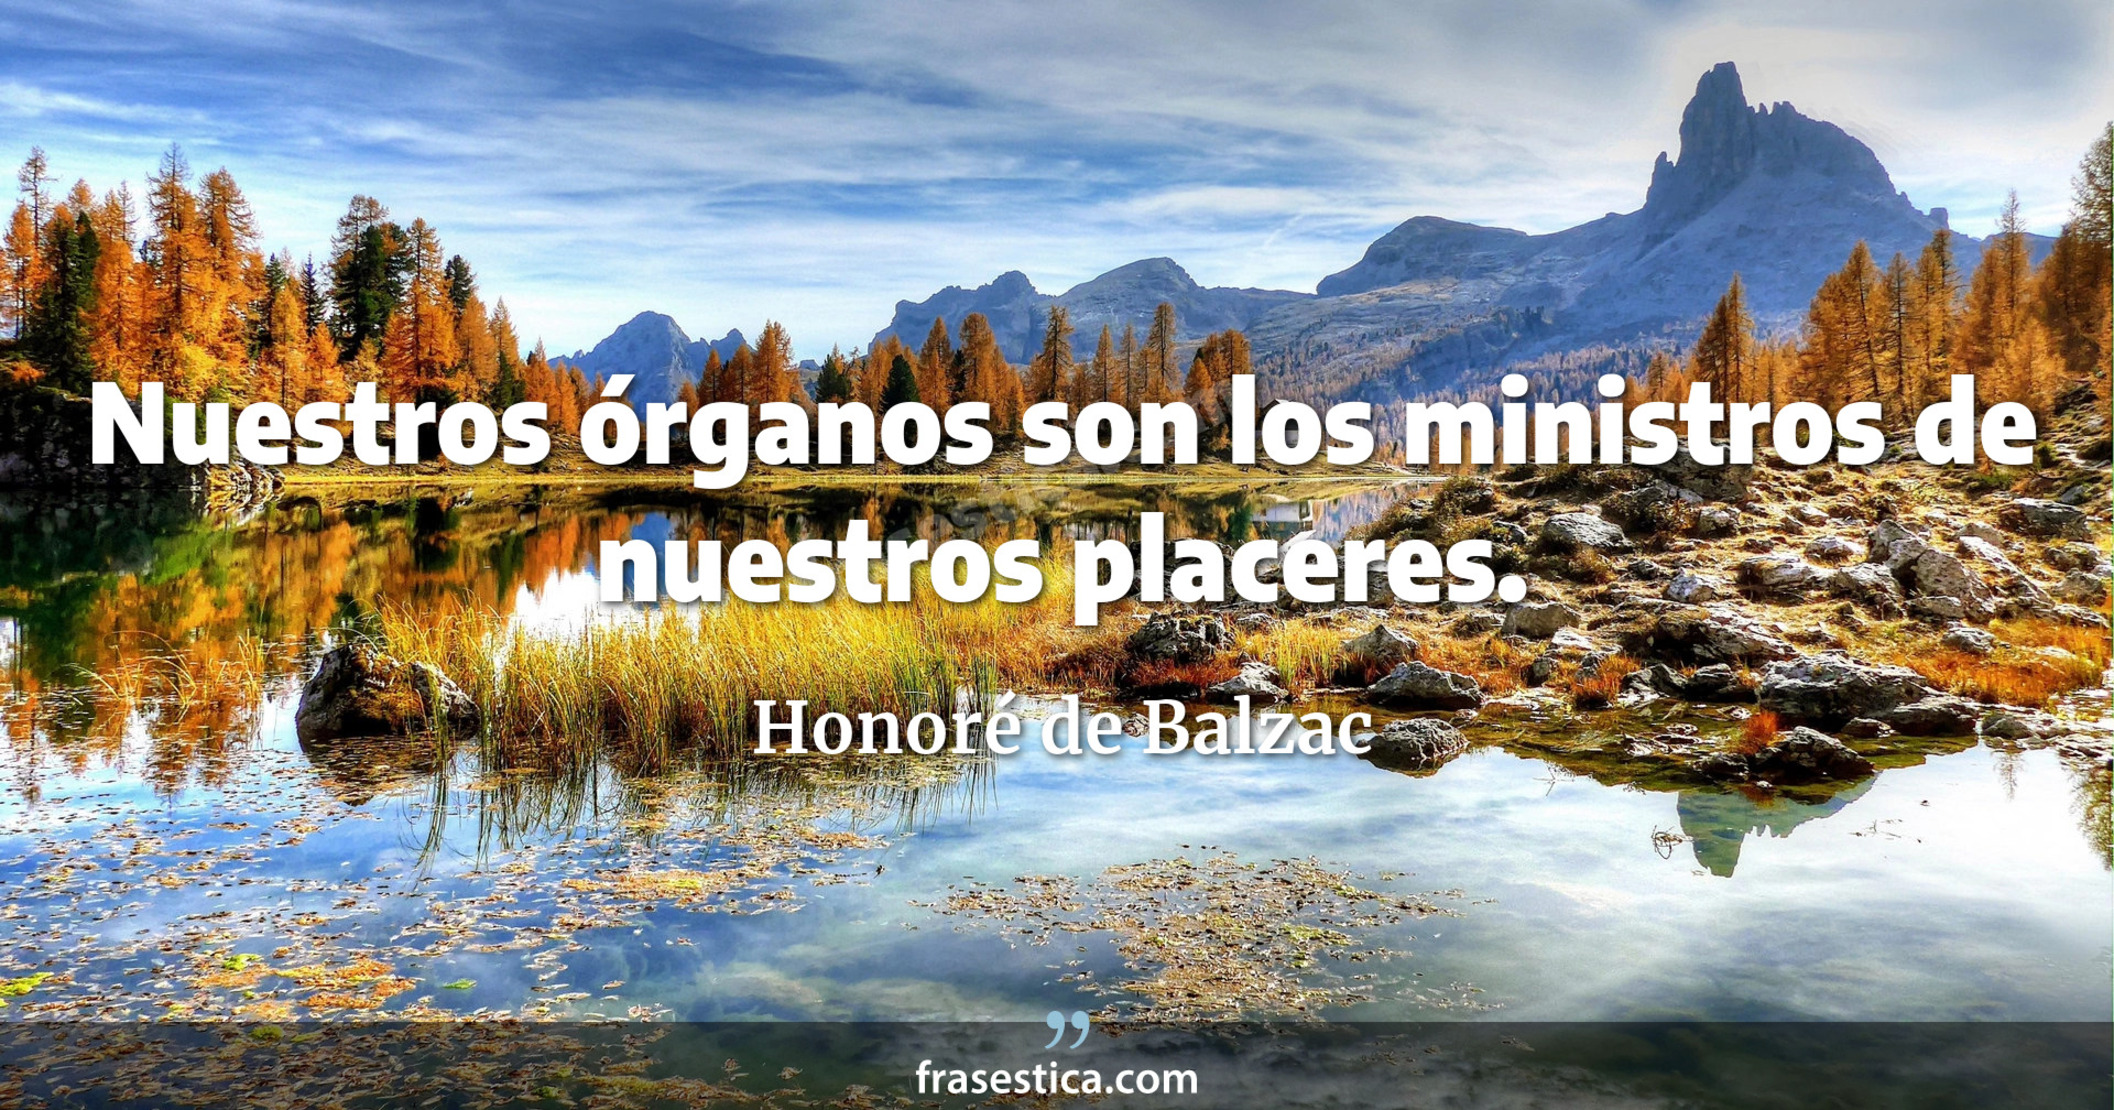 Nuestros órganos son los ministros de nuestros placeres. - Honoré de Balzac